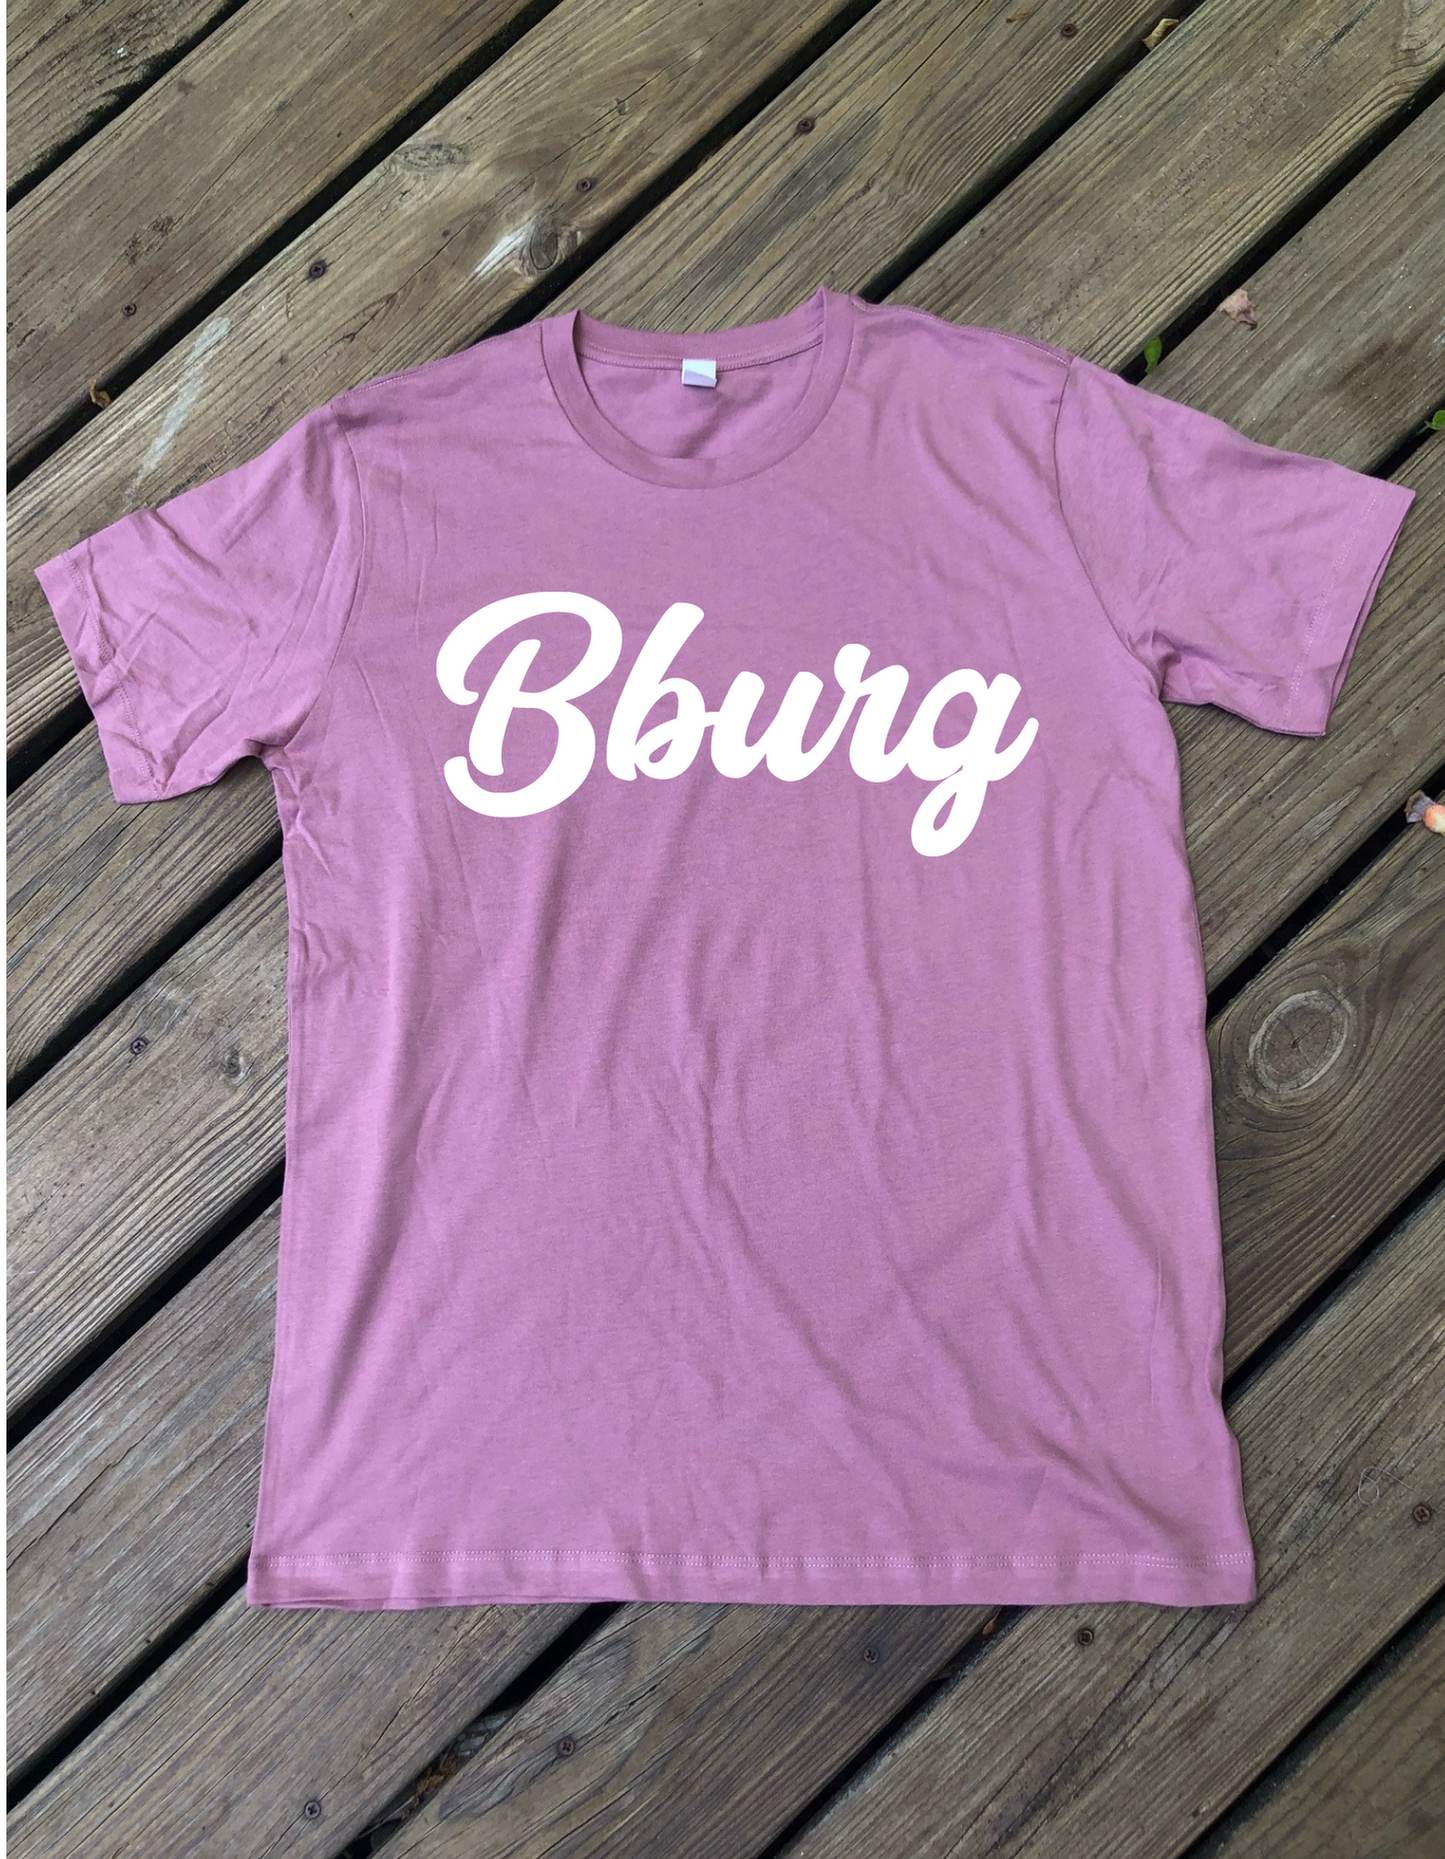 Bburg Hometown Shirt